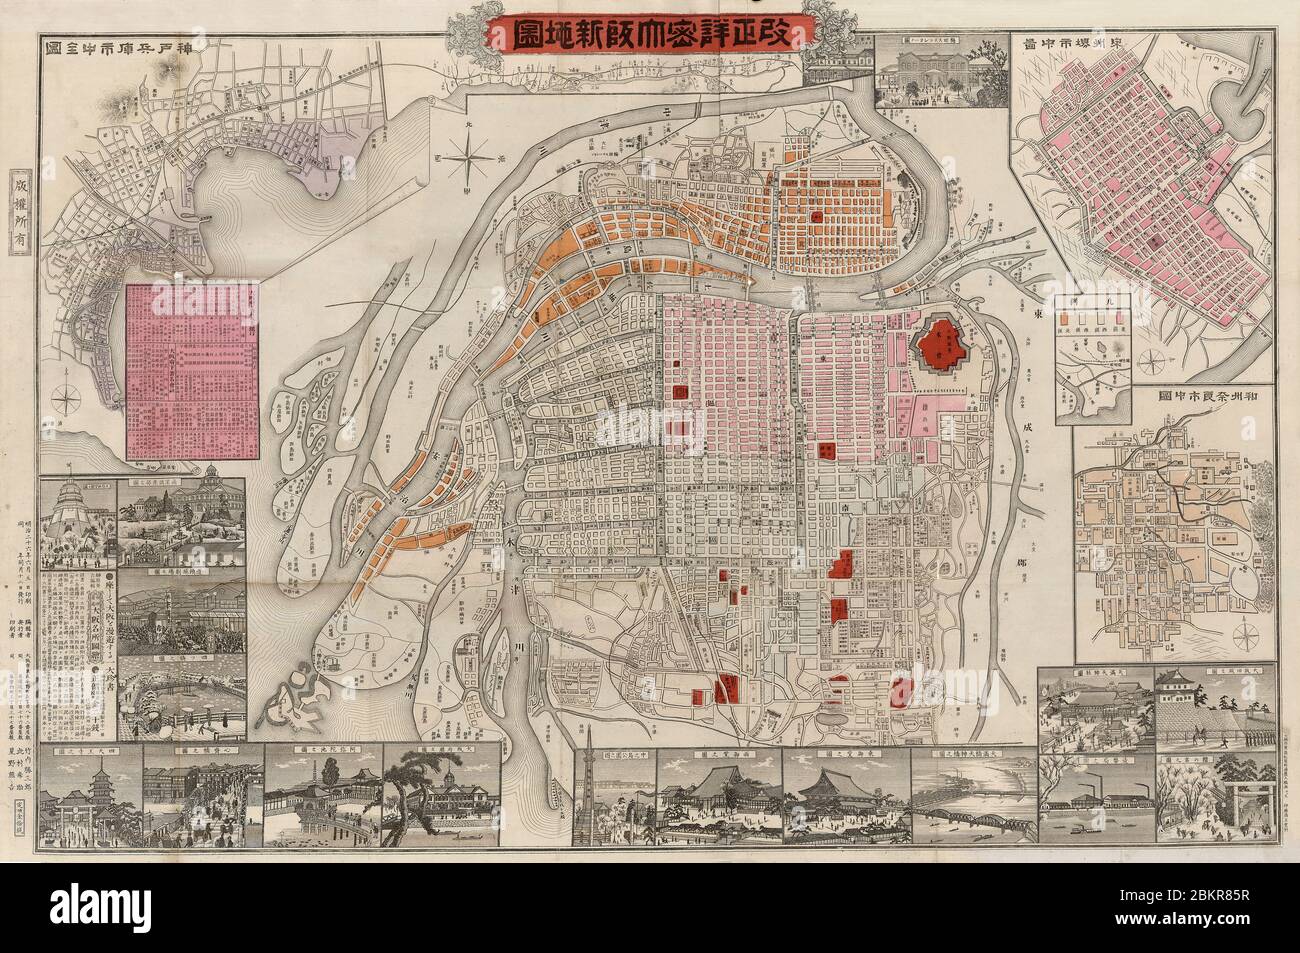 [ 1890er Jahre Japan - Karte von Osaka, 1893 ] - Karte von Osaka, gedruckt am 5. Juni 1893 (Meiji 26). Mit Straßenbahnlinien, Bahnhöfen, den Namen der Machi sowie Gravuren von Sehenswürdigkeiten. Vintage-Karte aus dem 19. Jahrhundert. Stockfoto